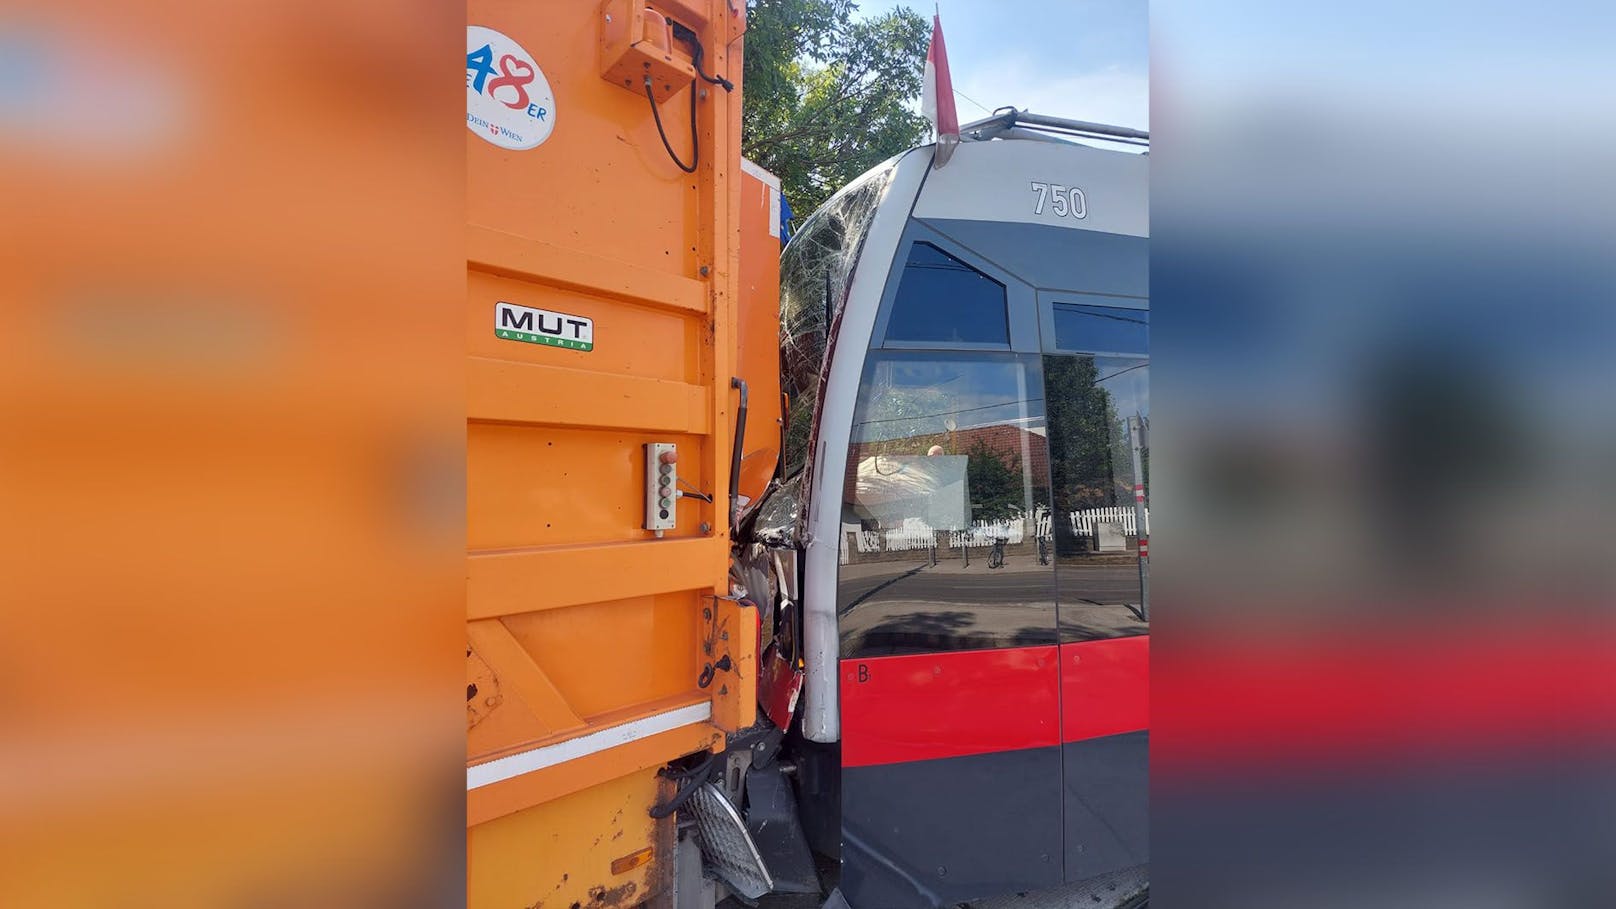 Bim kracht in Müllwagen – Verletzte bei Crash in Wien